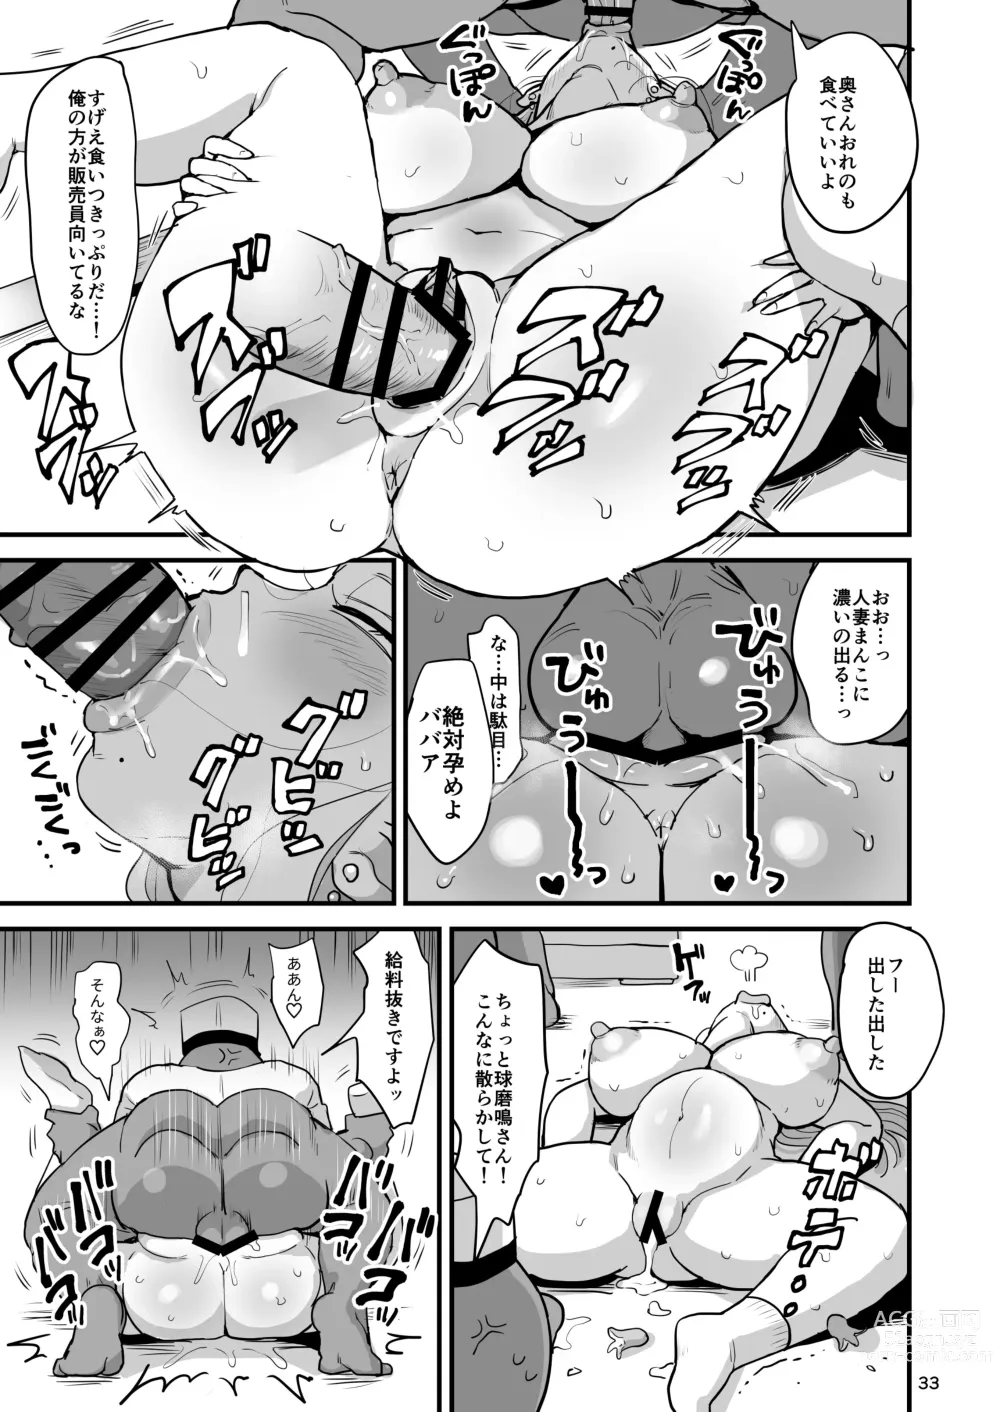 Page 32 of doujinshi Nandemo Chousa Mama Kuma Shizue wa Teiko ga Dekinai